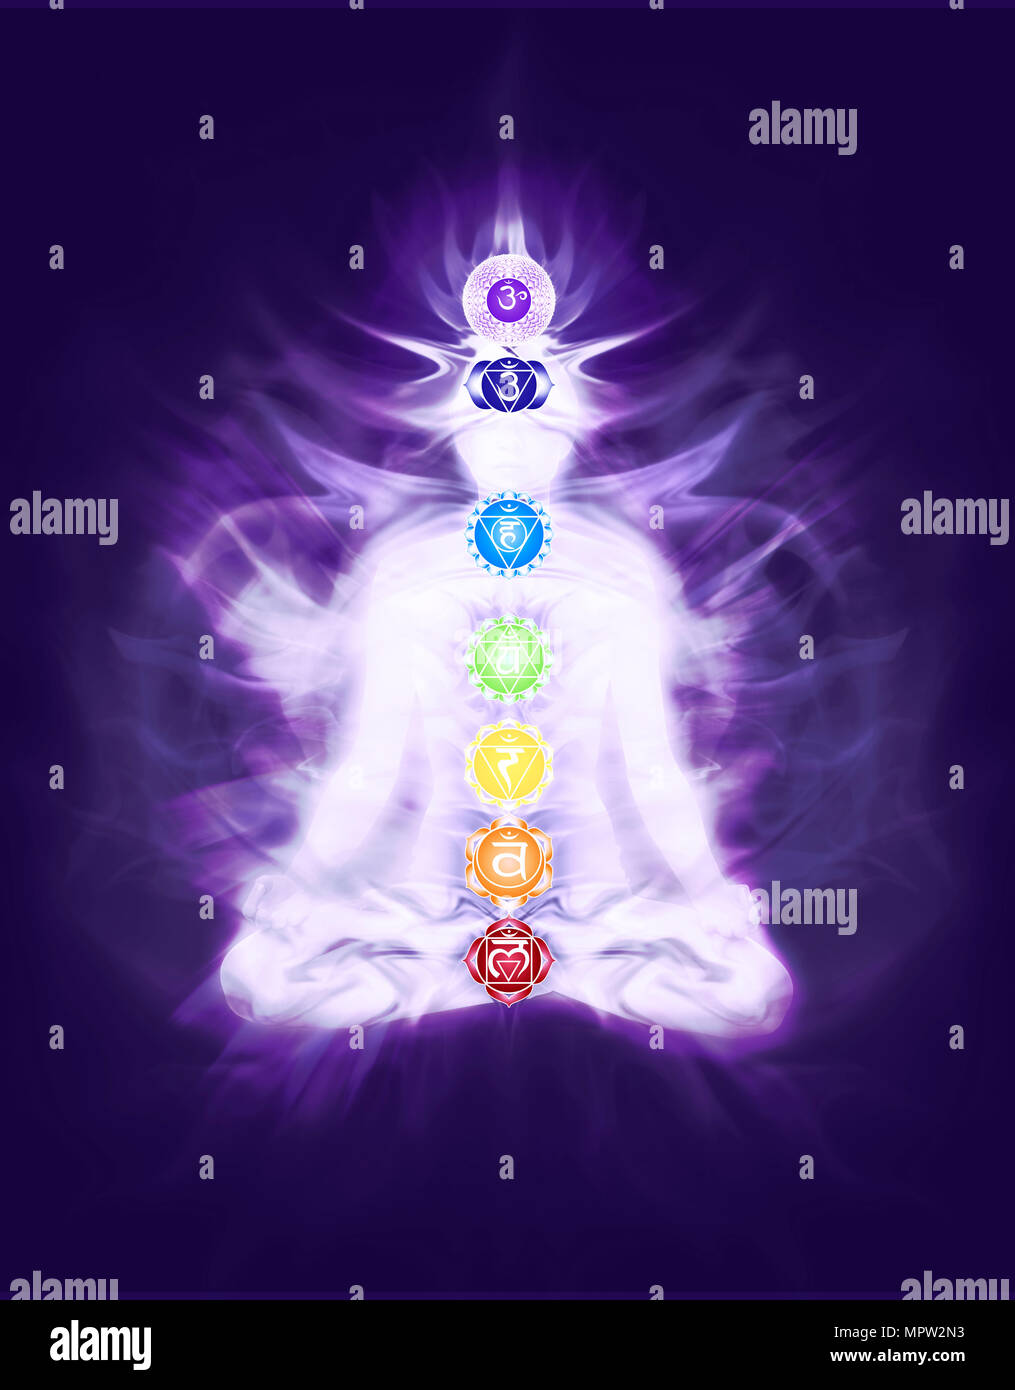 Persona sentada en la meditación del yoga lotus posan con chakras y colores provenientes del flujo de energía en el cuerpo superpuestas, diseño artístico, Ilustración conceptual Foto de stock